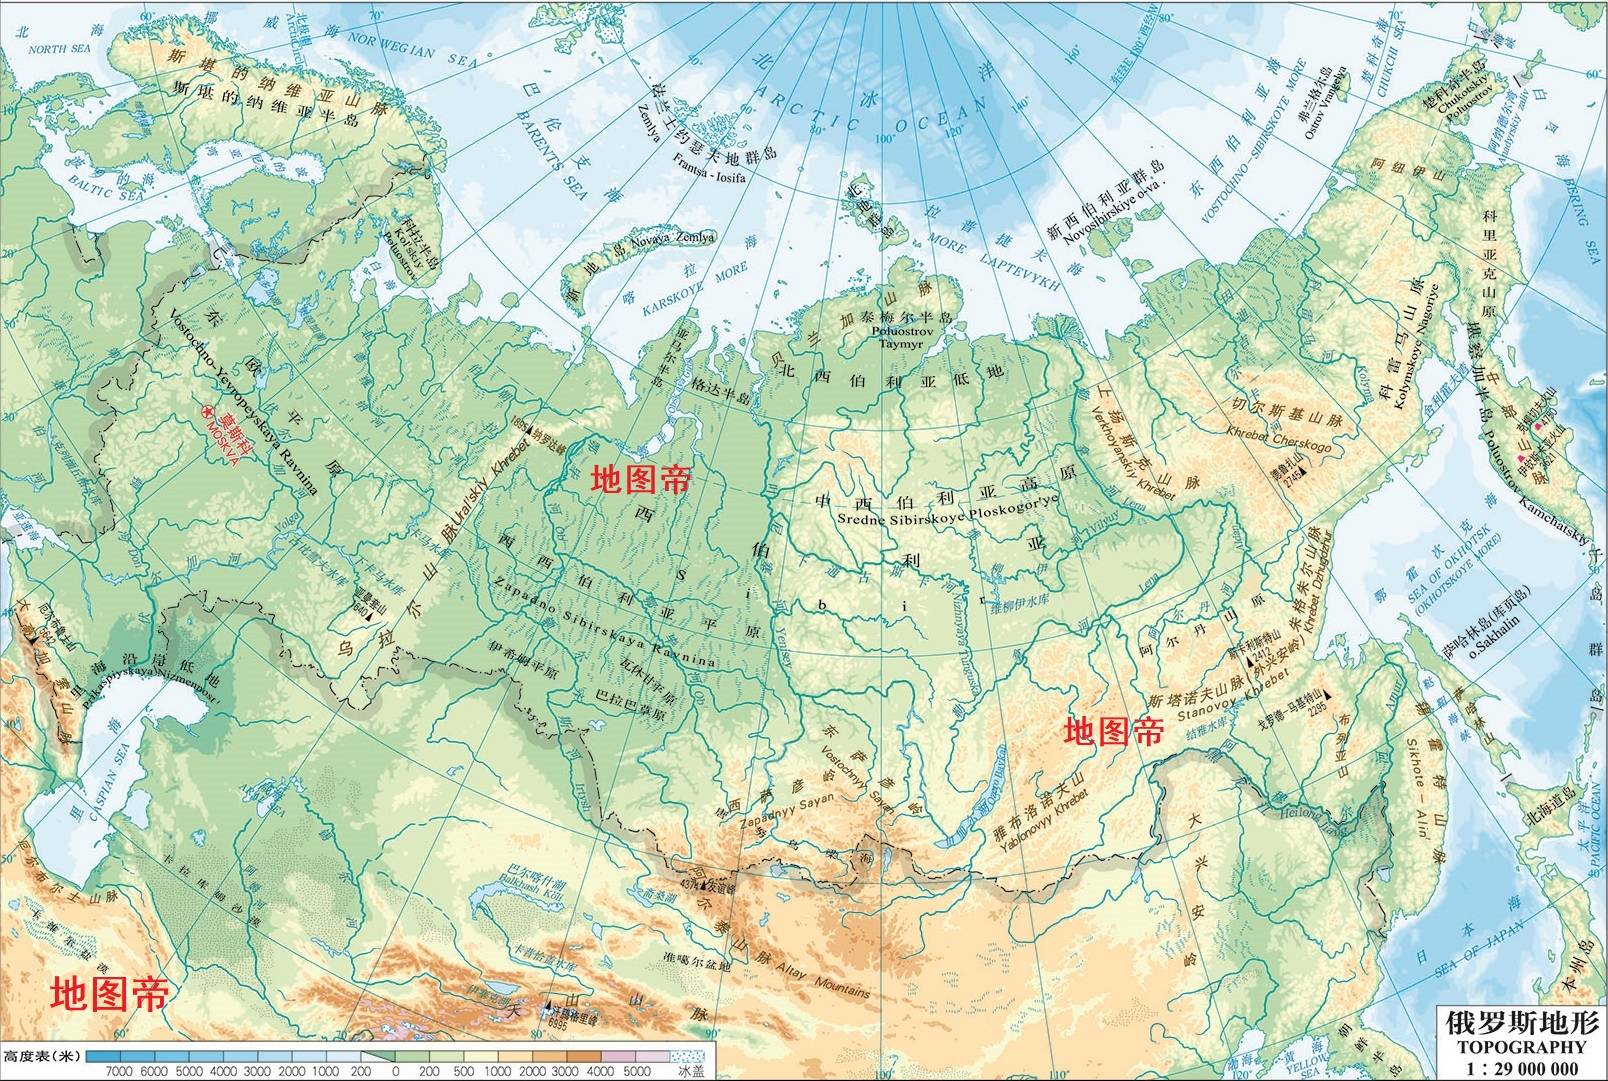 俄罗斯帝国又名沙皇俄国,起初只是罗斯诸国中微不足道的一个,当时称